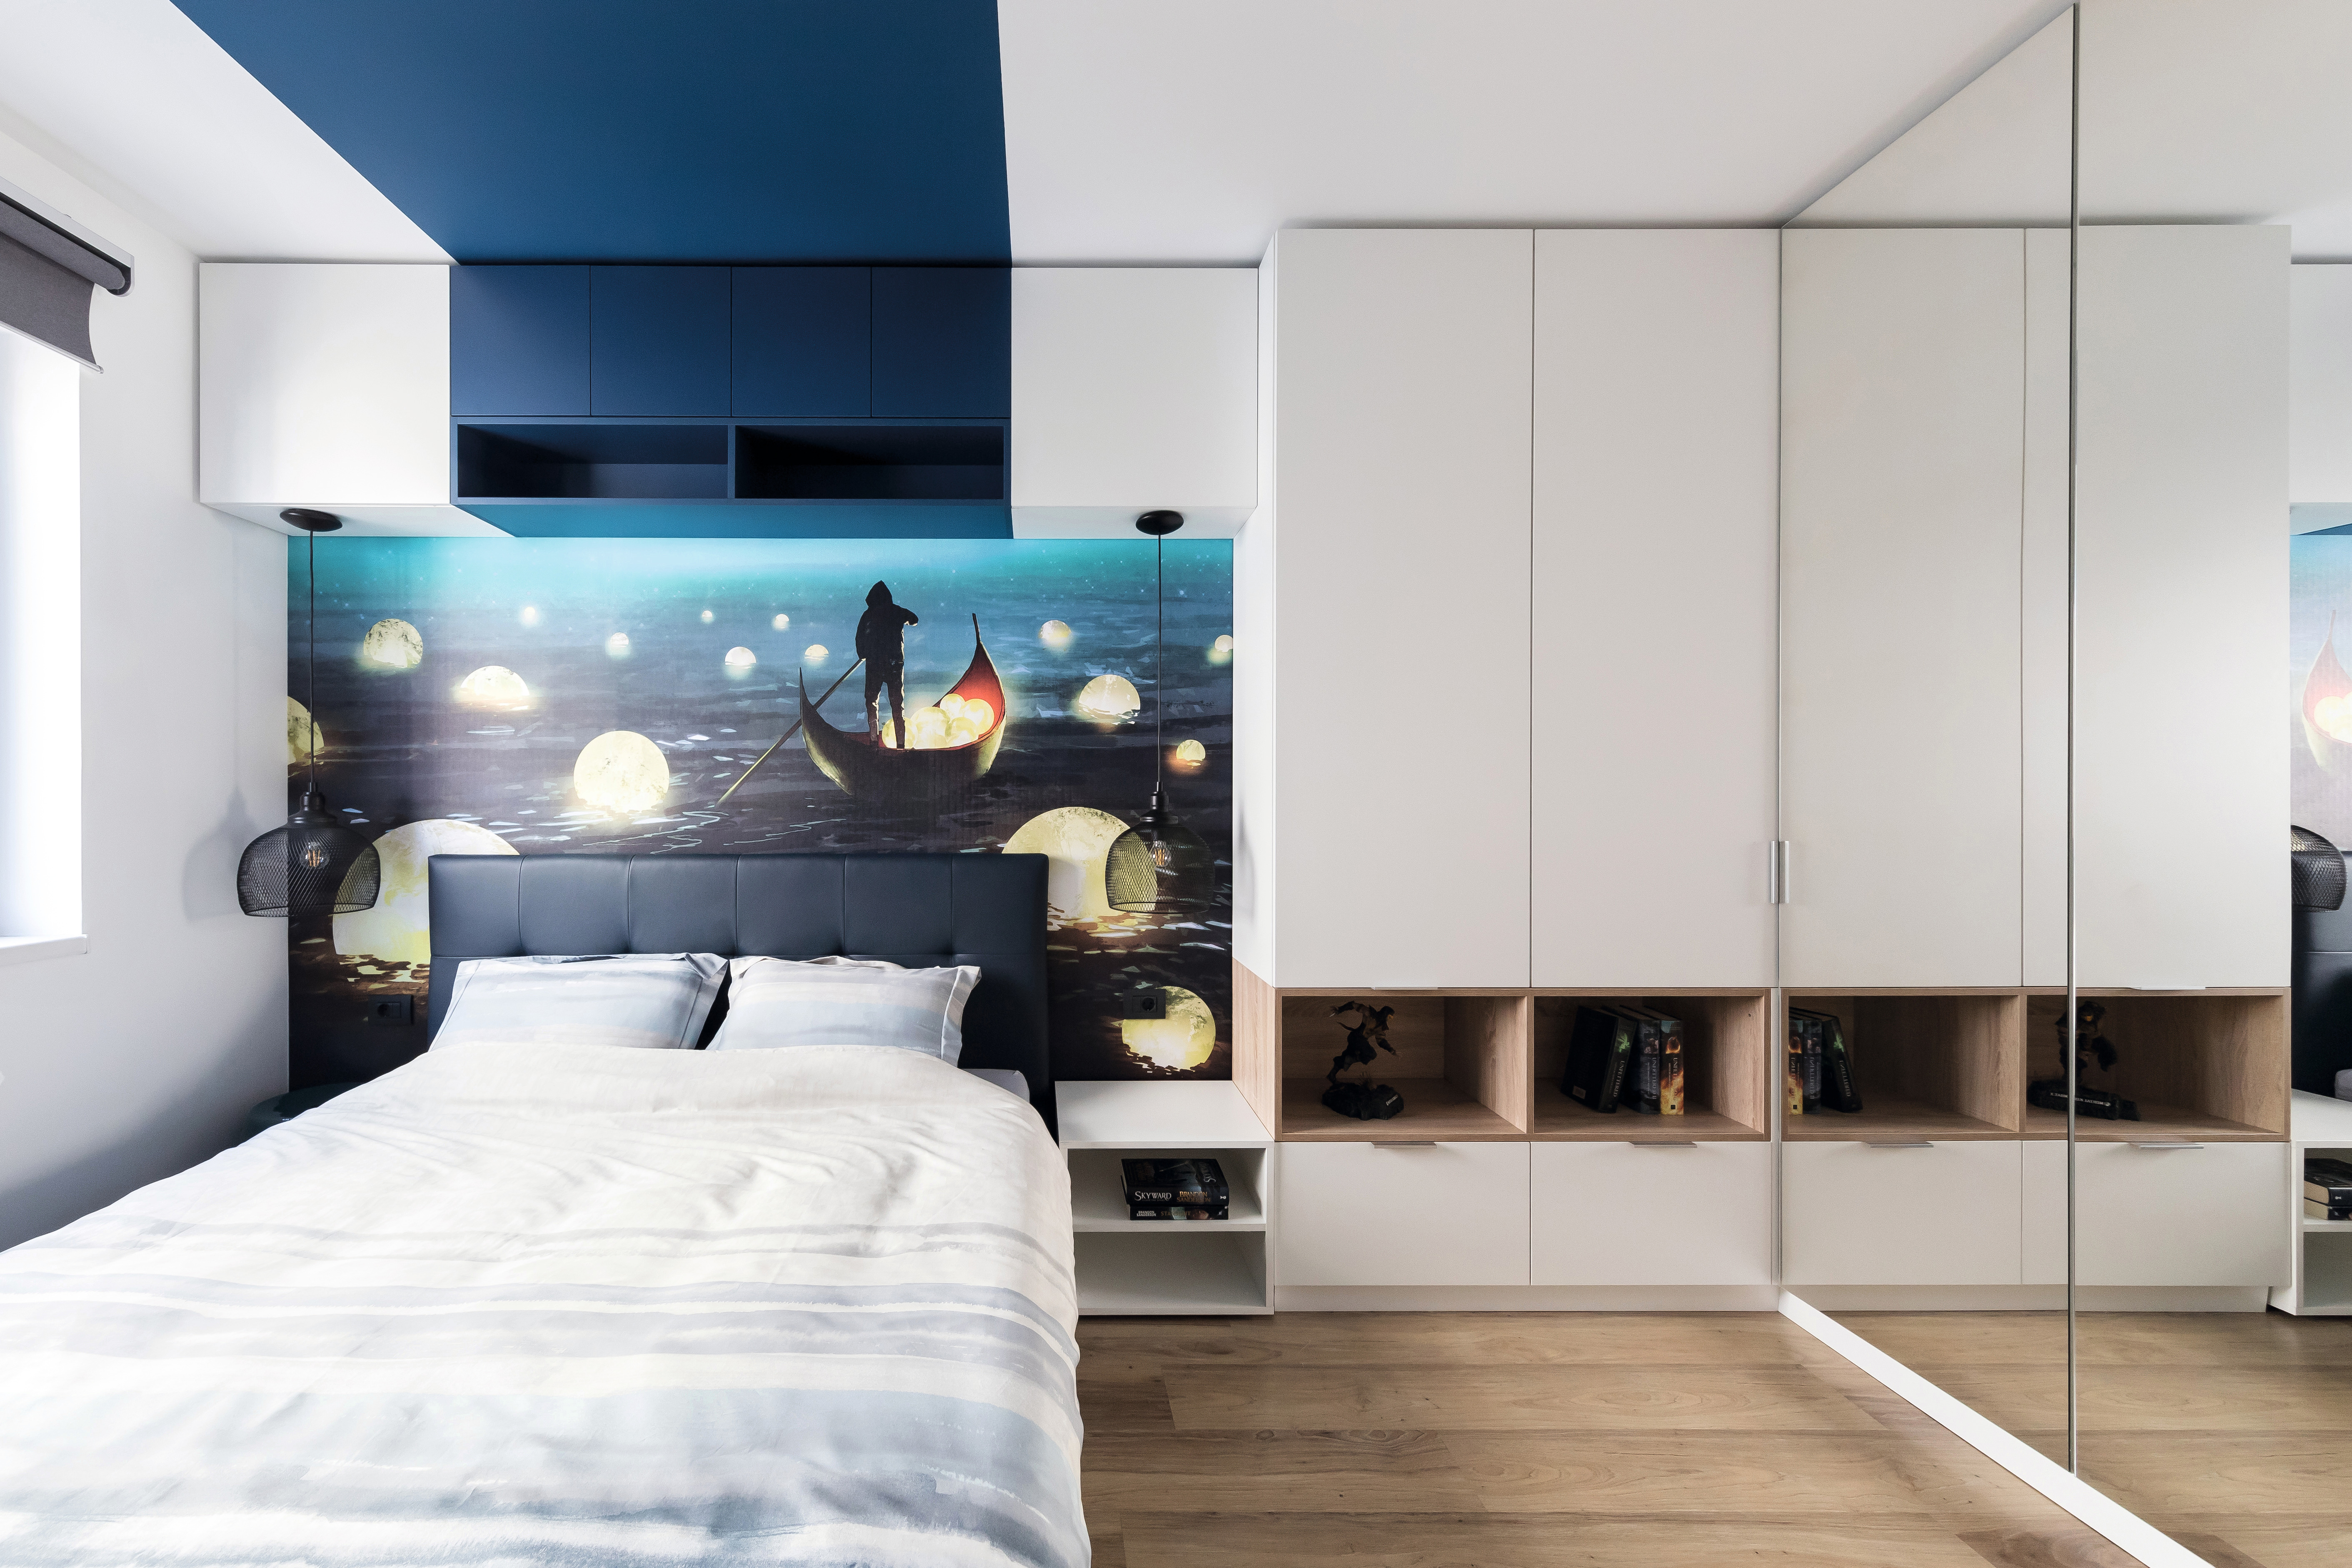 Atmosfera kao iz snova u spavaćoj sobi s dekorima U504 ST9 Tirolsko plava i W1000 ST9 Premium bela